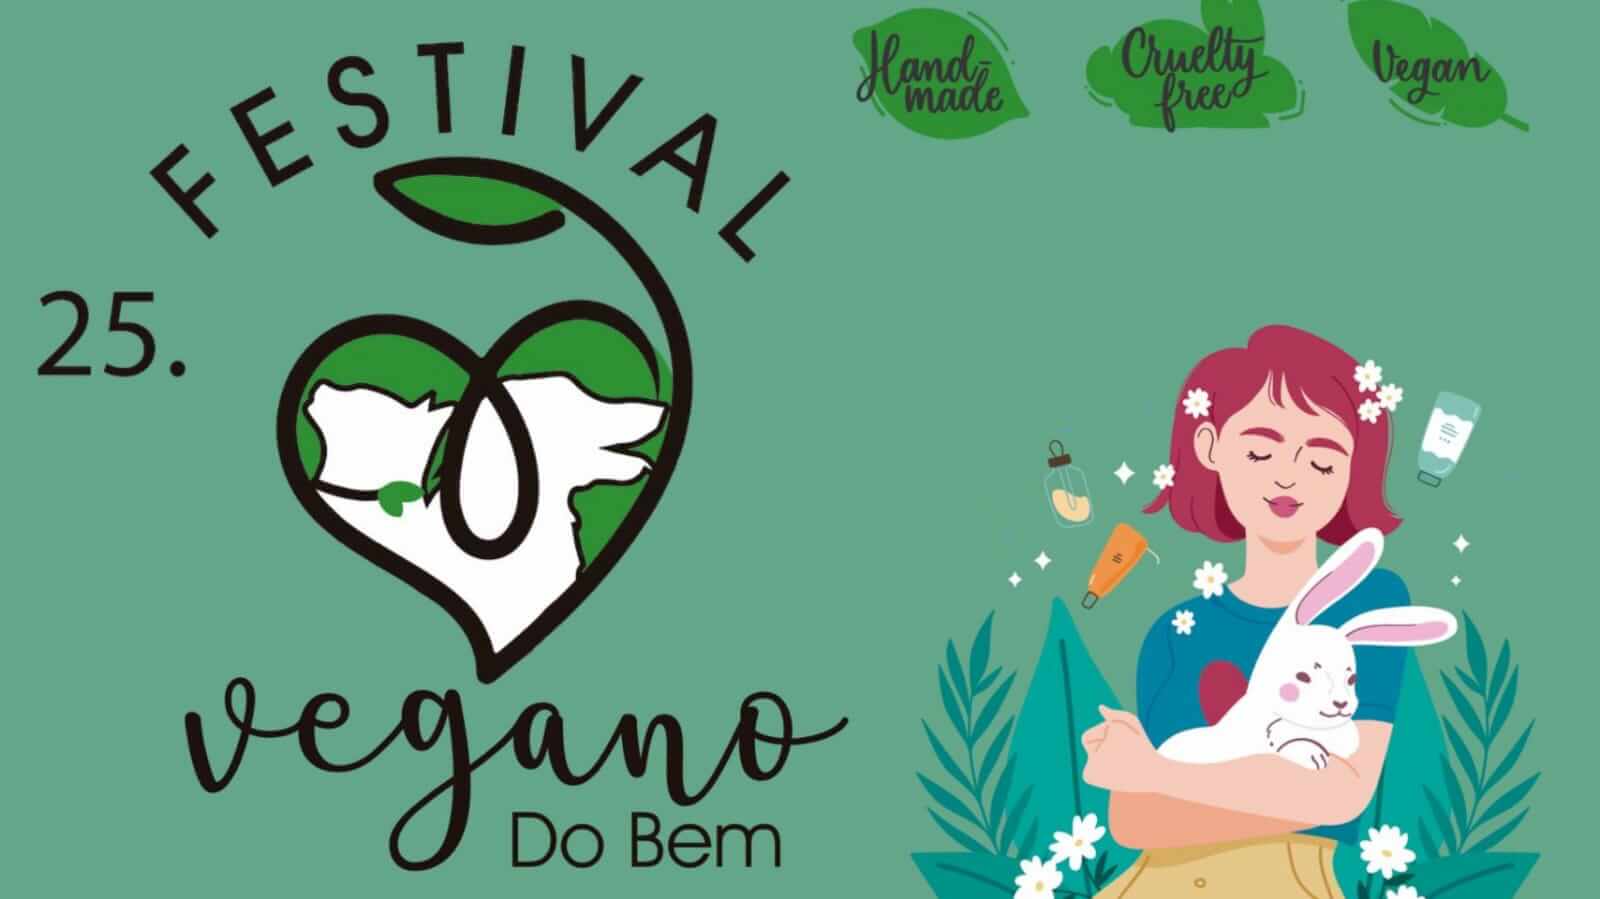 Banner Festival Vegano do Bem